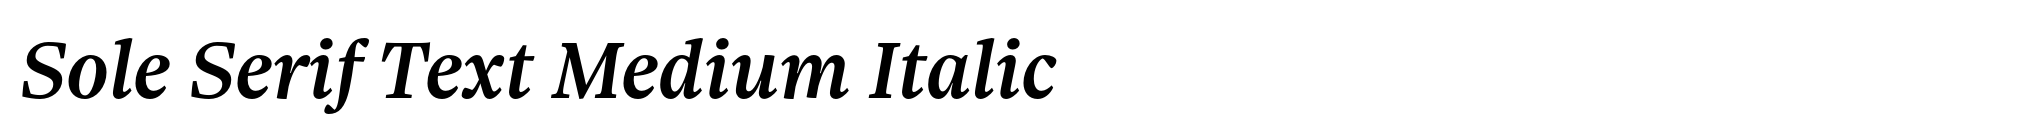 Sole Serif Text Medium Italic image